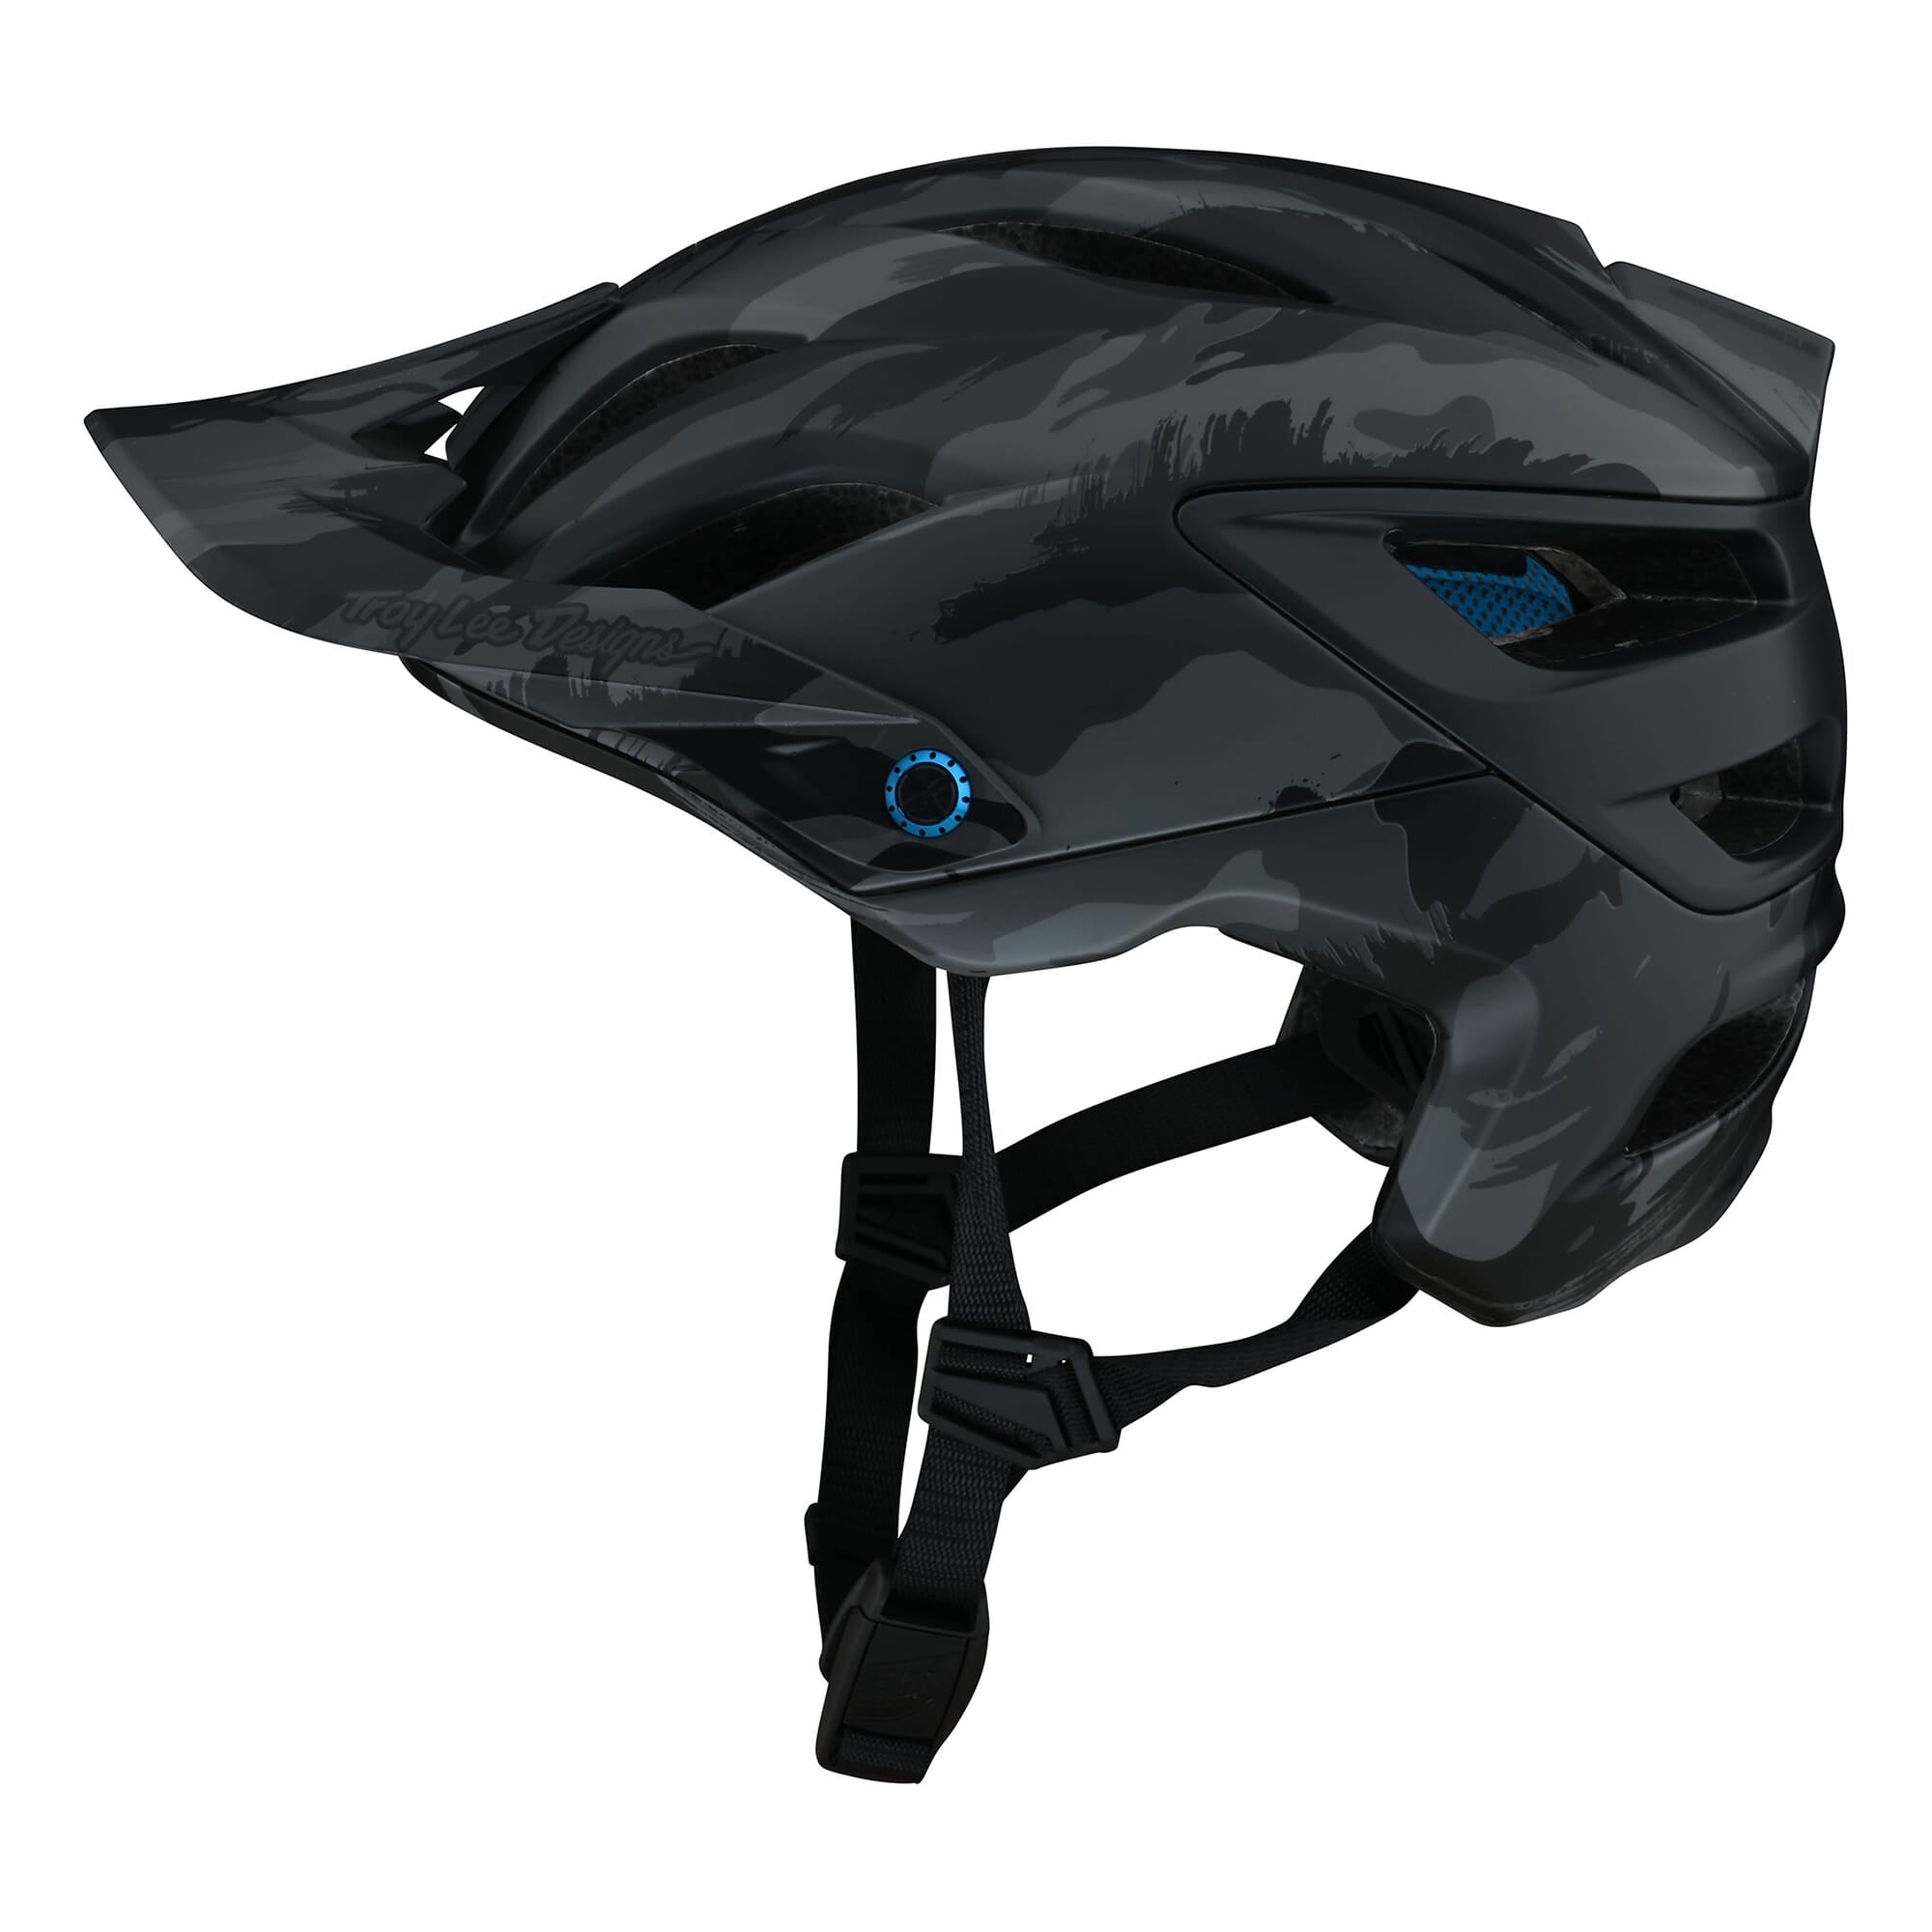 Troy Lee Designs A3 MIPS Helmet